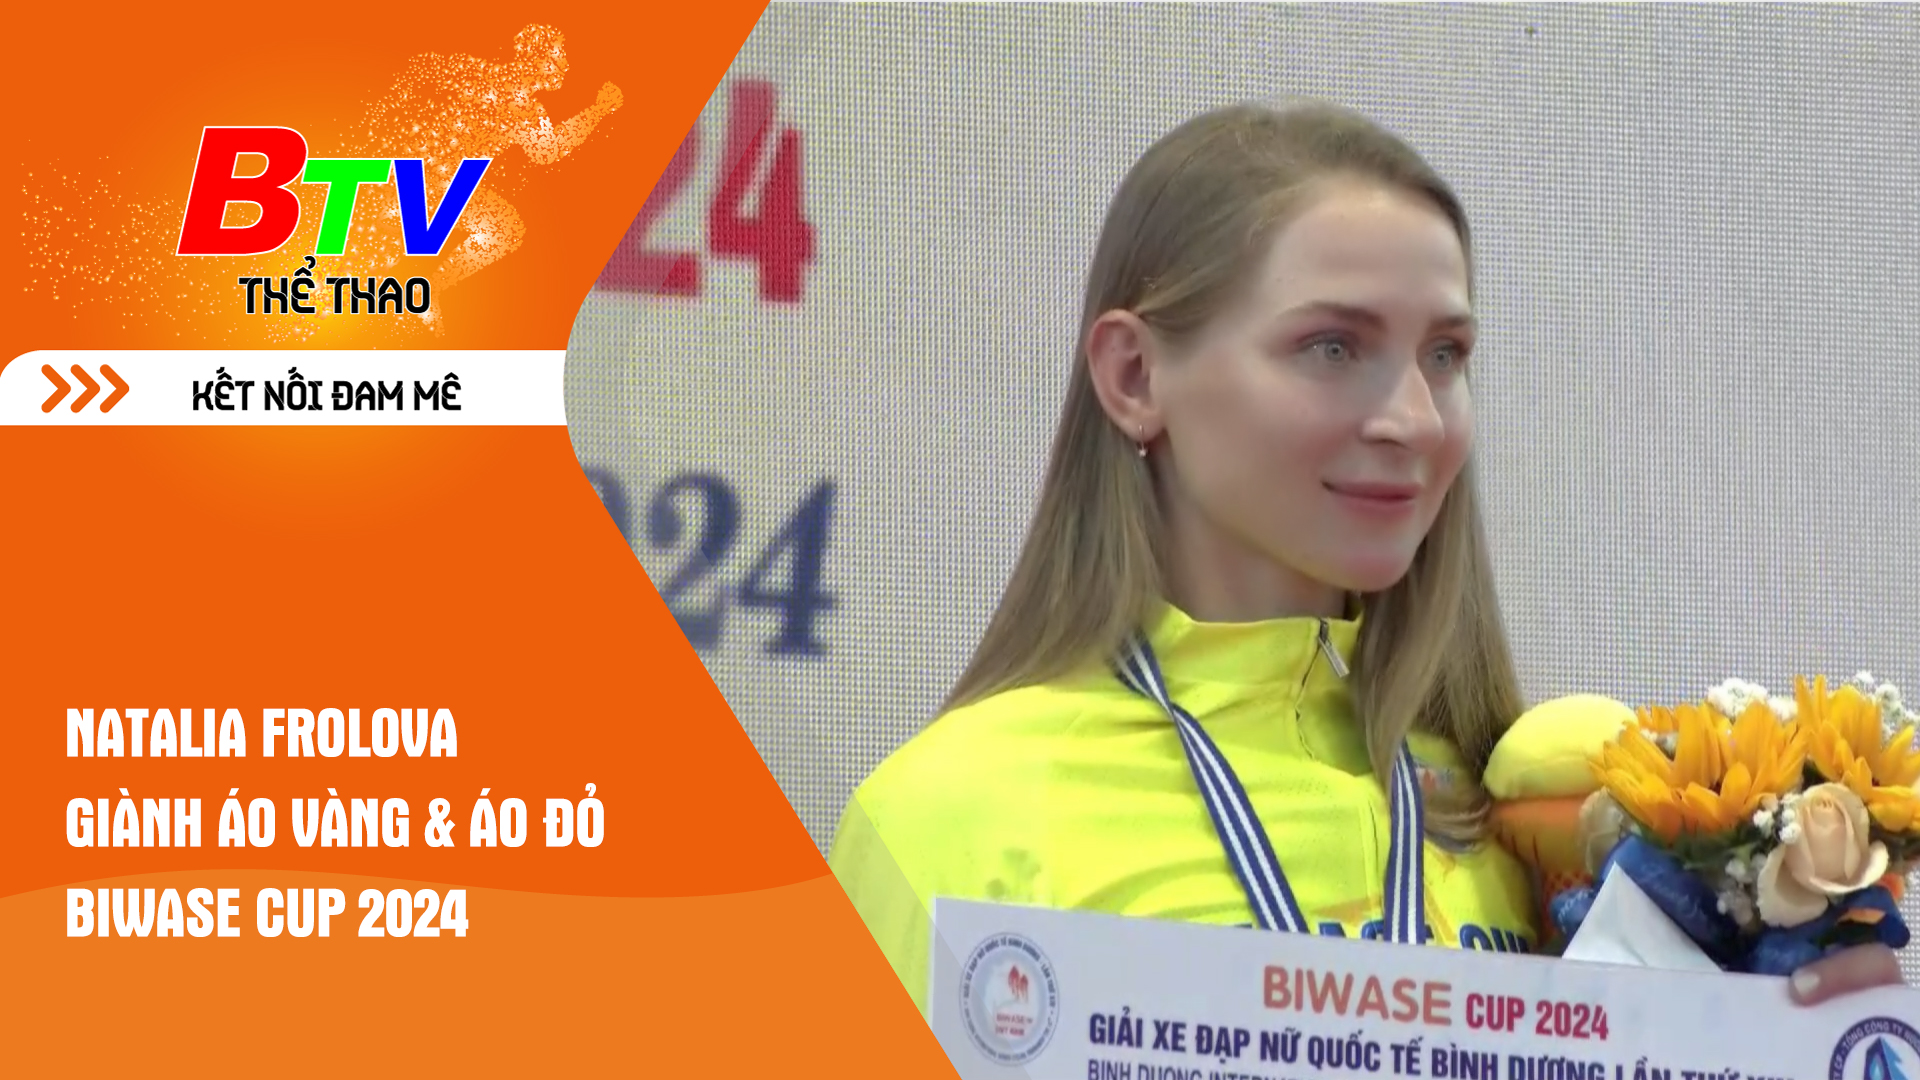 Natalia Frolova giành áo vàng & áo đỏ Biwase Cup 2024